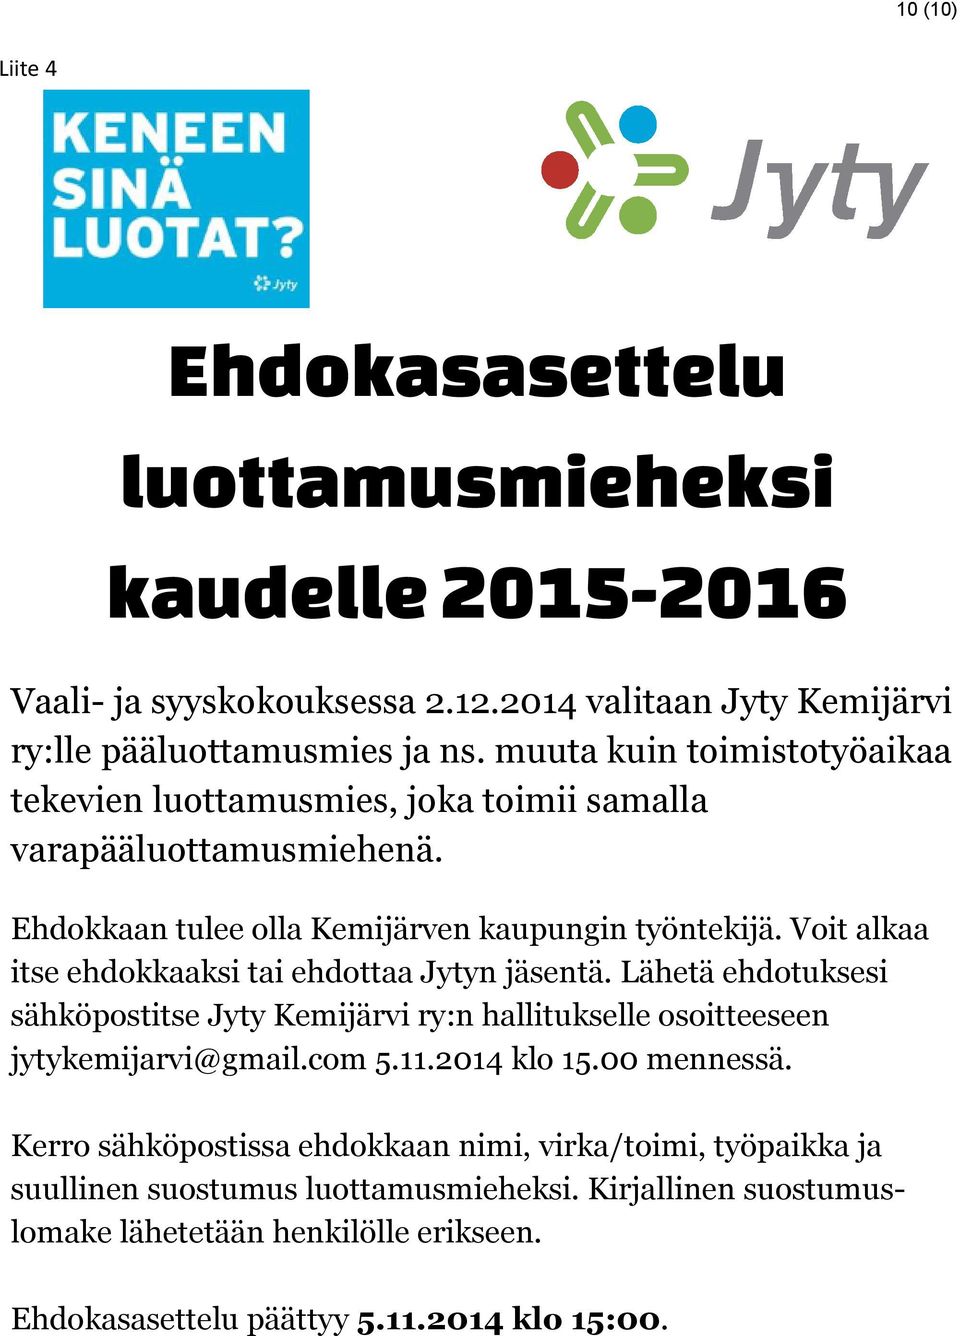 Voit alkaa itse ehdokkaaksi tai ehdottaa Jytyn jäsentä. Lähetä ehdotuksesi sähköpostitse Jyty Kemijärvi ry:n hallitukselle osoitteeseen jytykemijarvi@gmail.com 5.11.2014 klo 15.